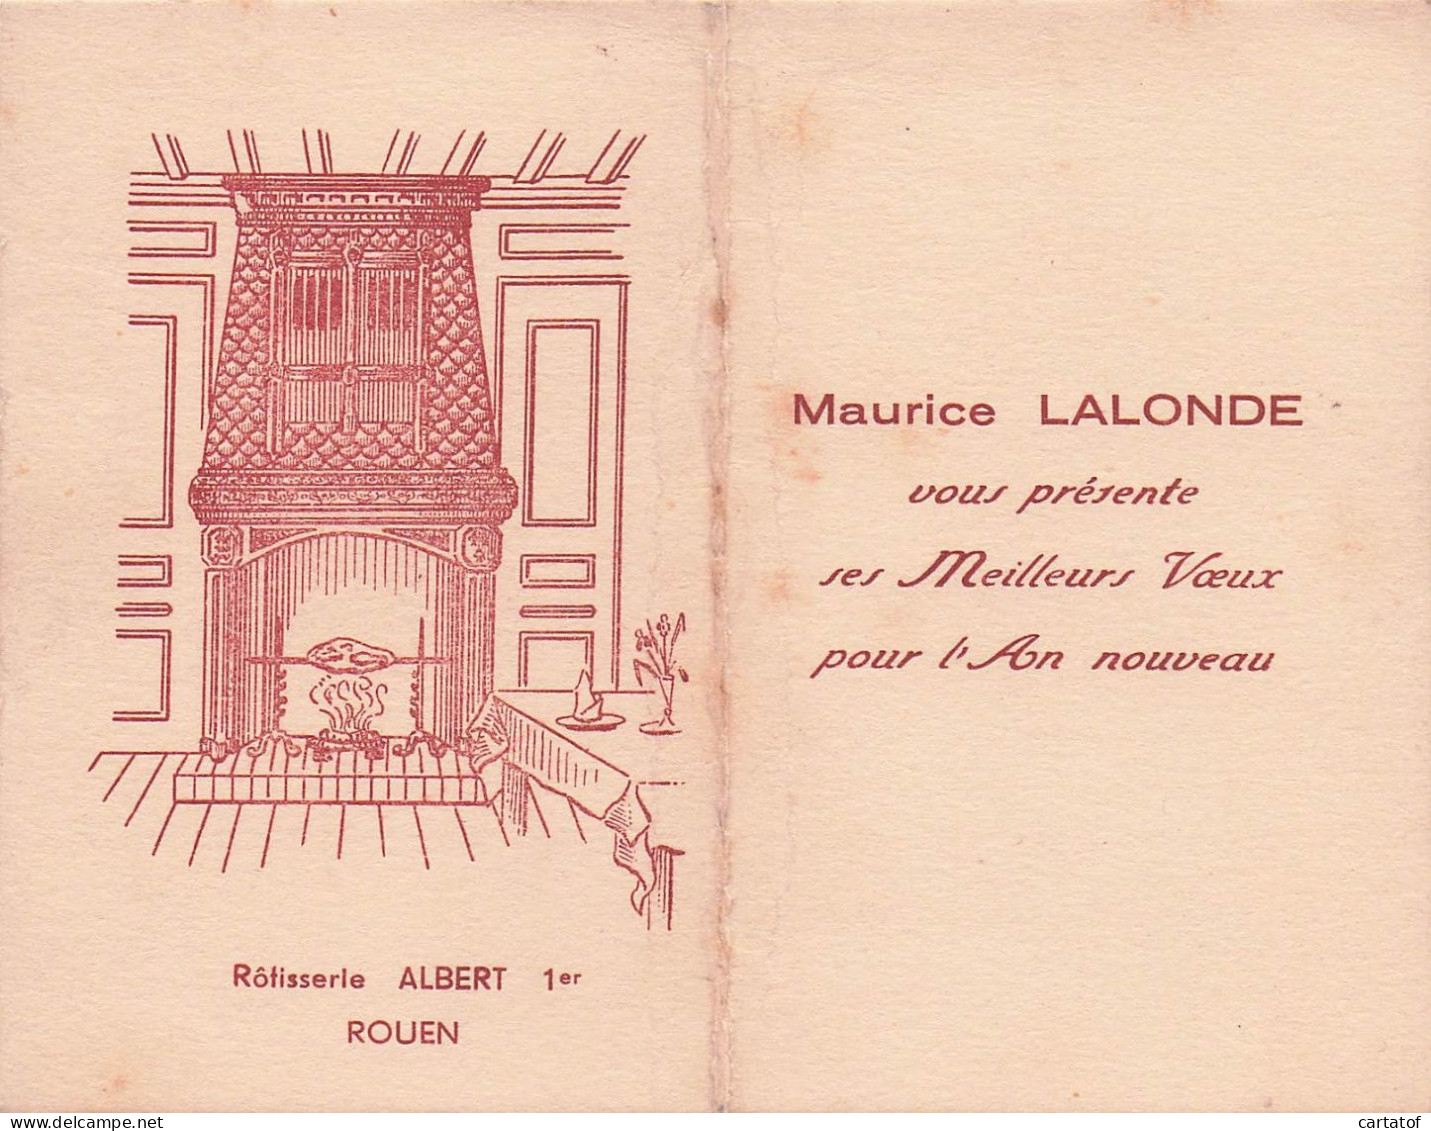 Rotisserie ALBERT 1er  ROUEN . Maurice LALONDE Présente Ses Meilleurs Vœux - Cartes D'hotel